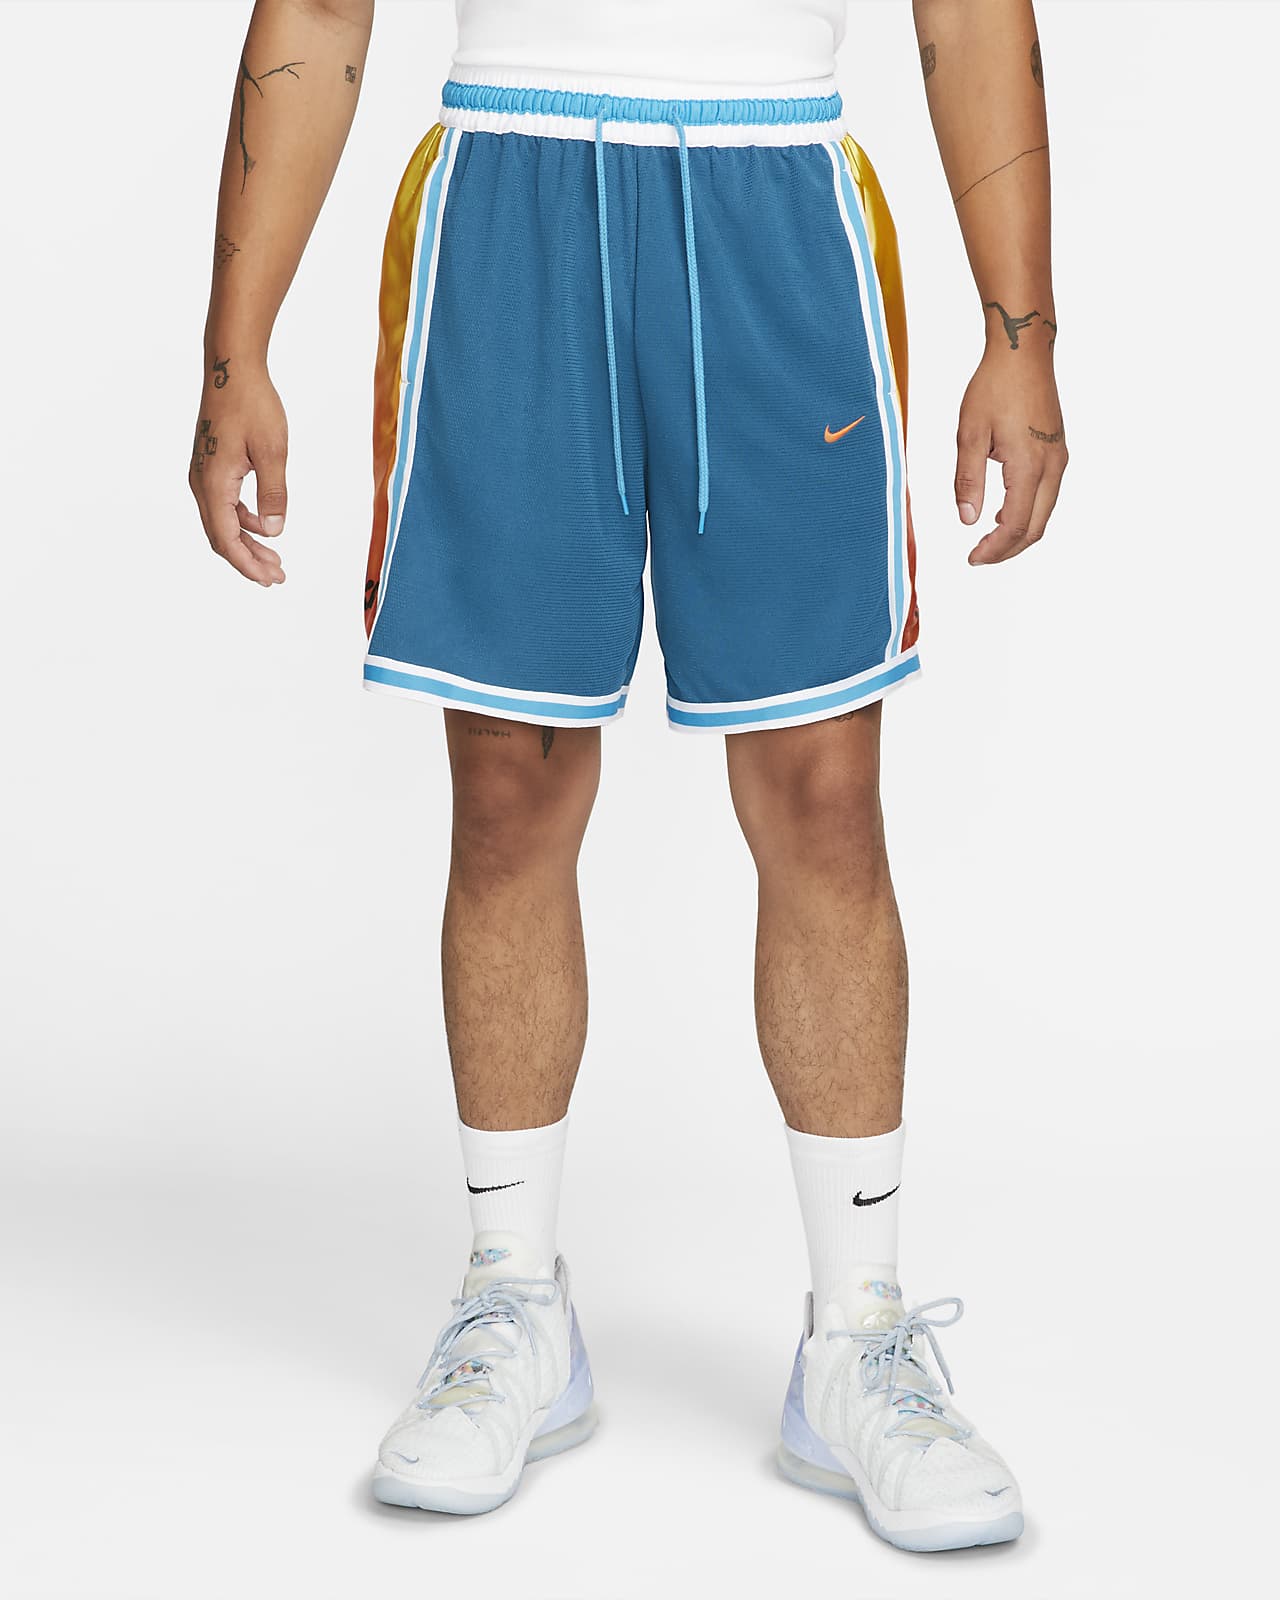 Shorts de básquetbol para hombre Nike Dri-FIT DNA+